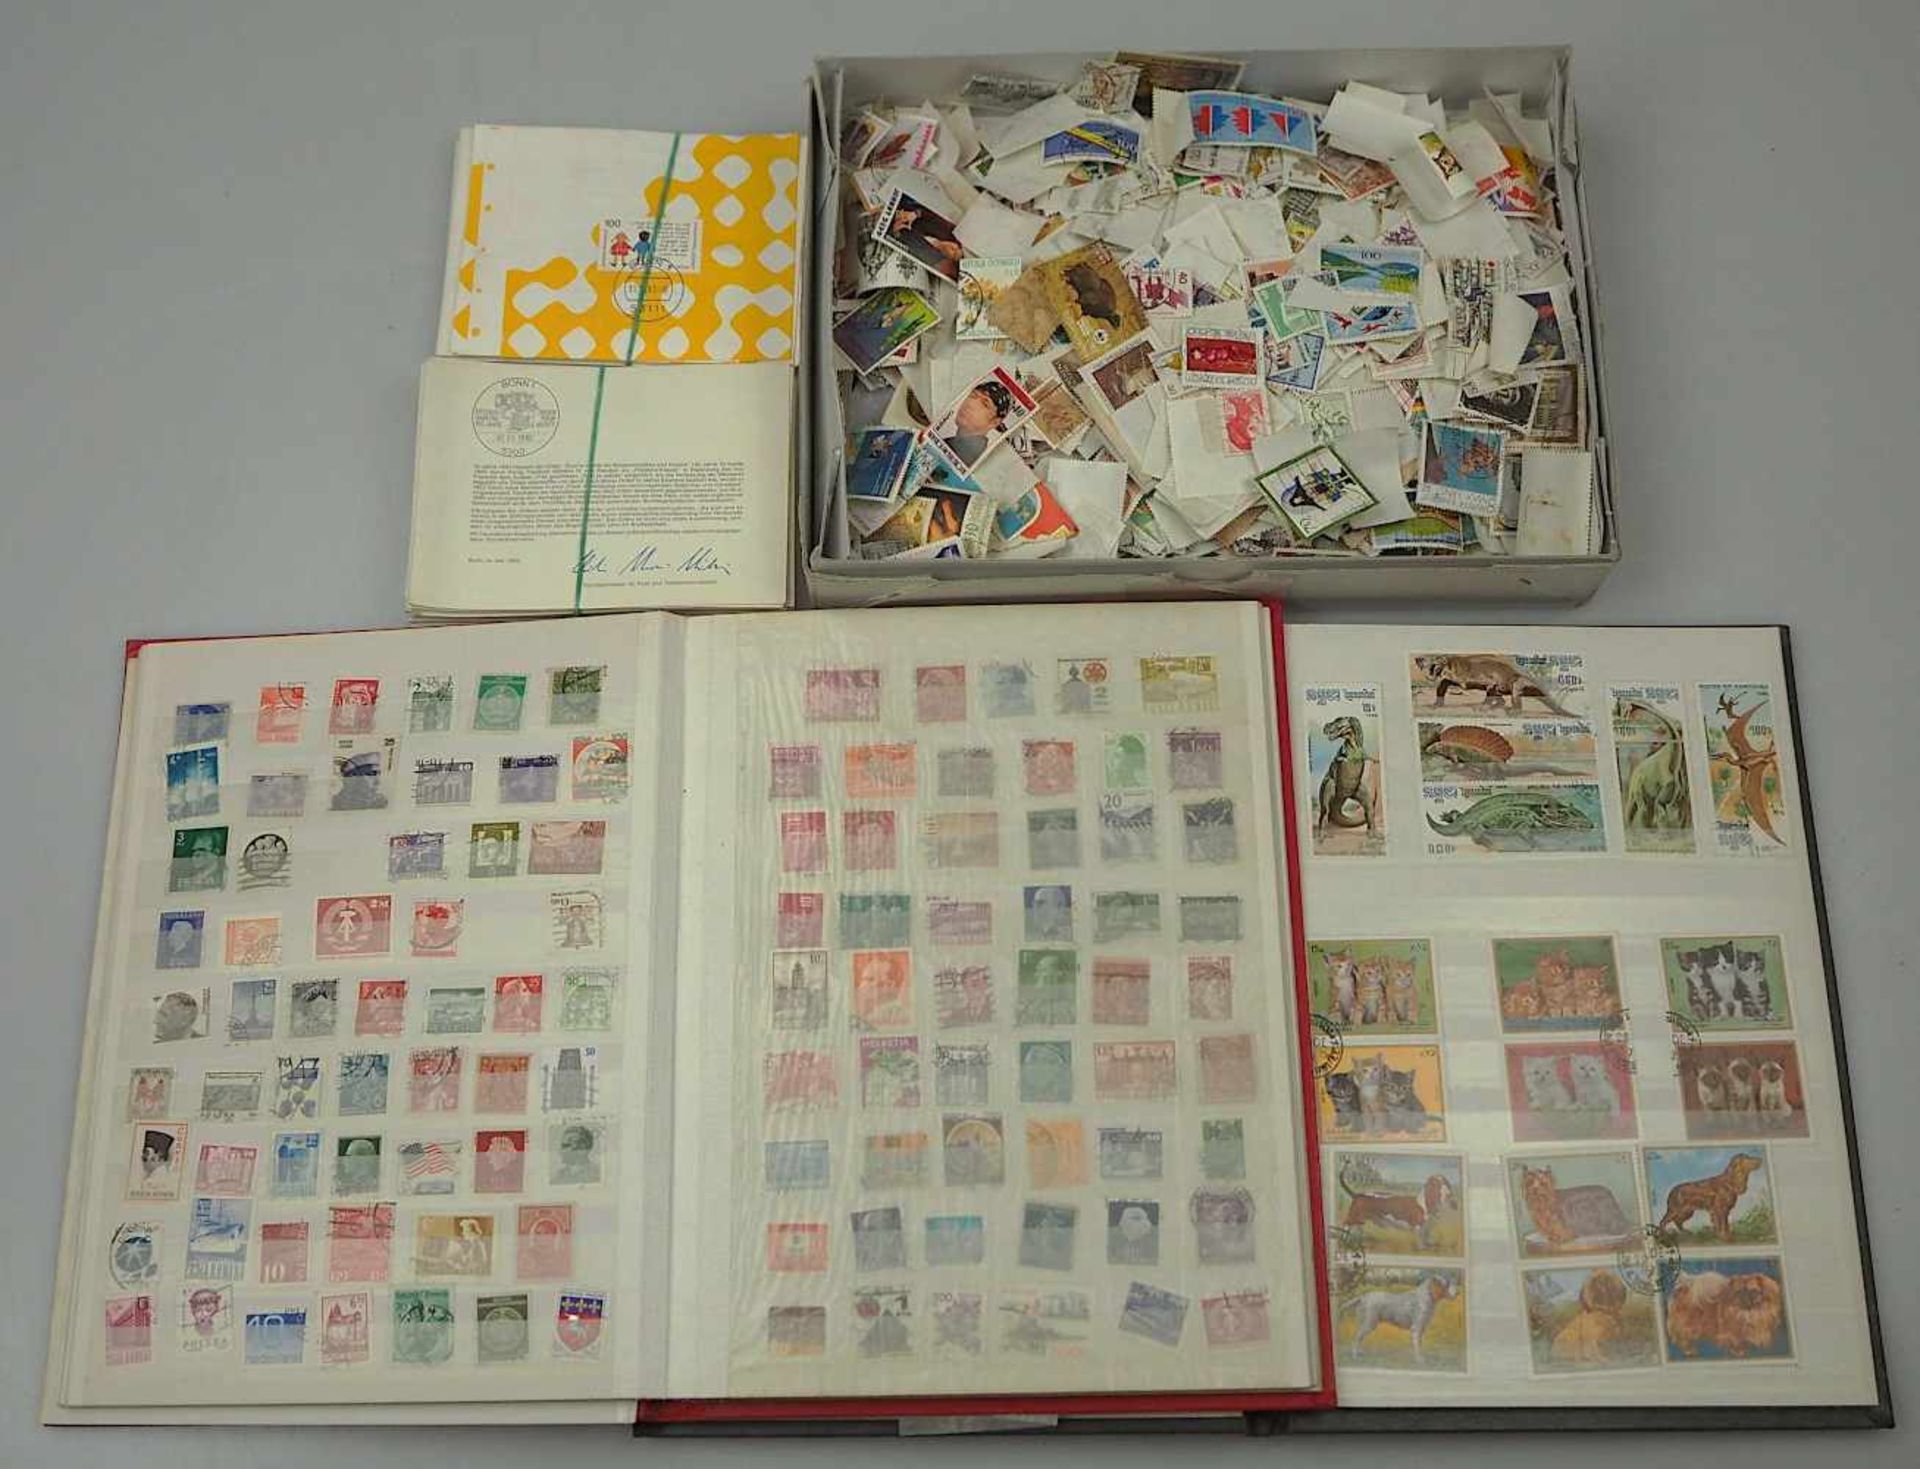 1 Konv. Briefmarken ETB's u.a. BRD, alle Welt wohl ab 1950 gesammelt unkomplett in Alben und lose